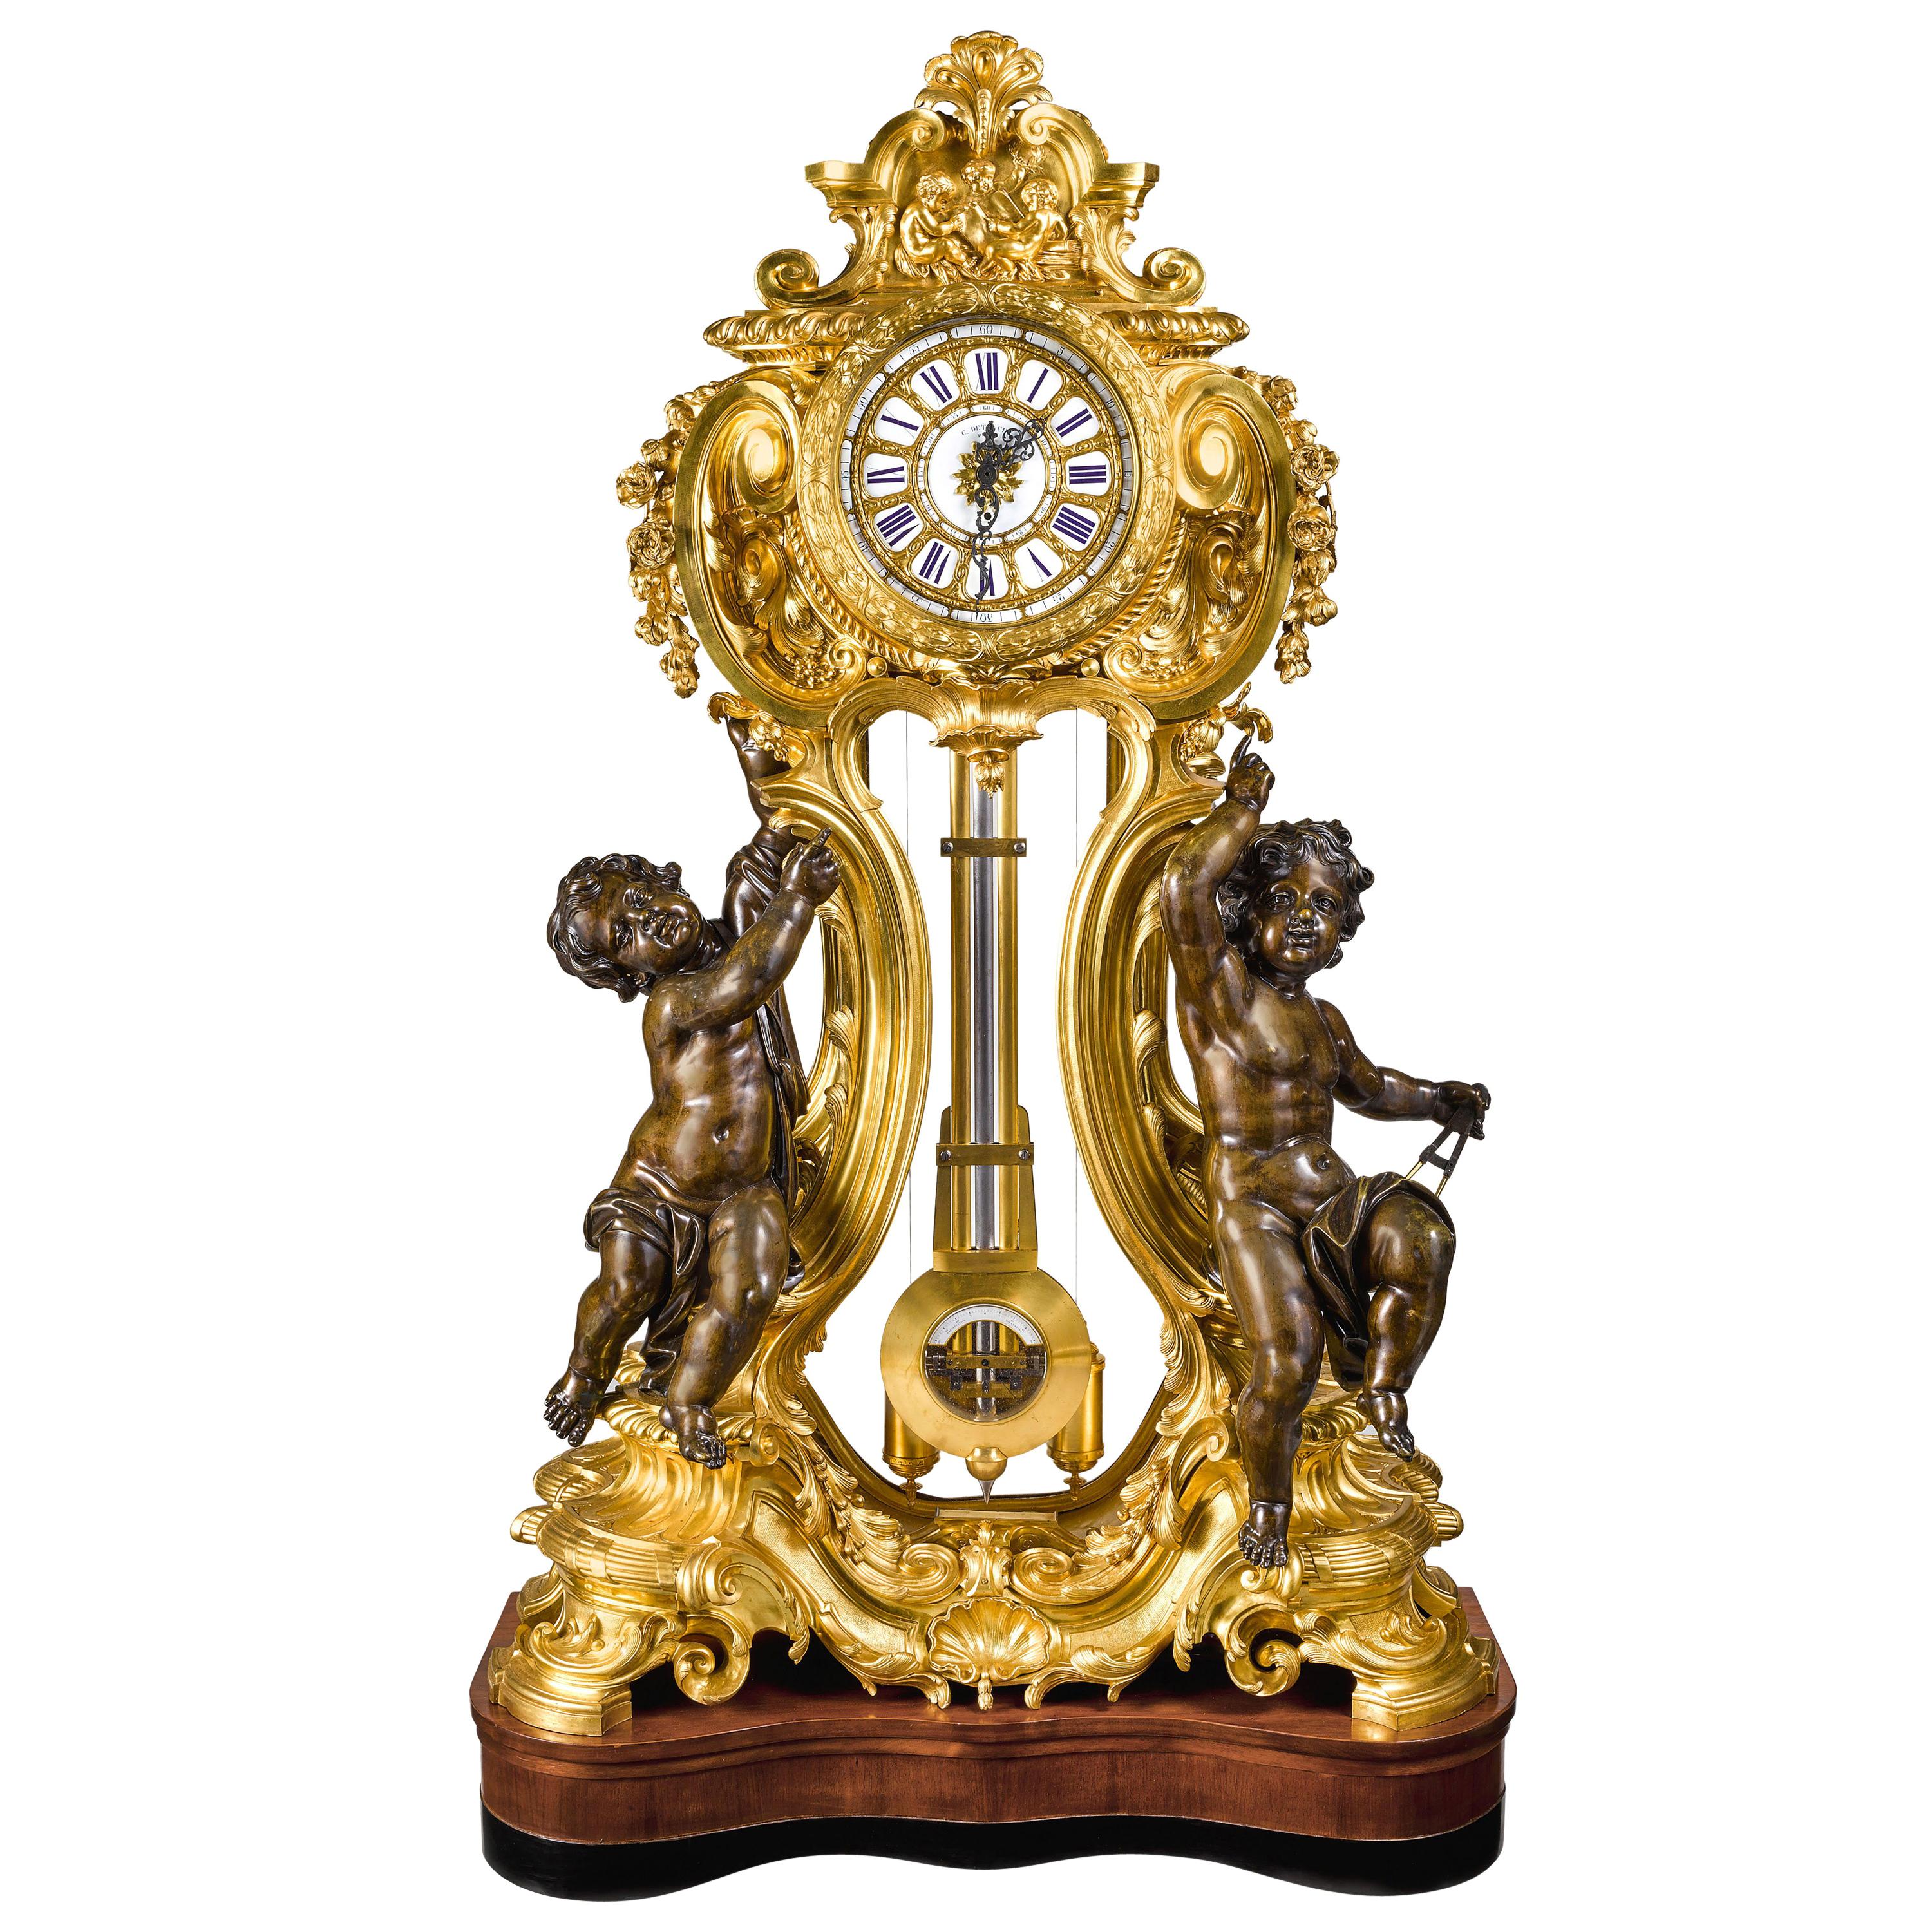 Eine palastartige, äußerst seltene und bedeutende französische Regulateur de Parquet-Uhr aus Ormolu und patinierter Bronze von Louis-Constantin Detouche, Paris, um 1850.

Das Uhrengehäuse aus feinstem französischen Ormolu, mit 2 sehr großen